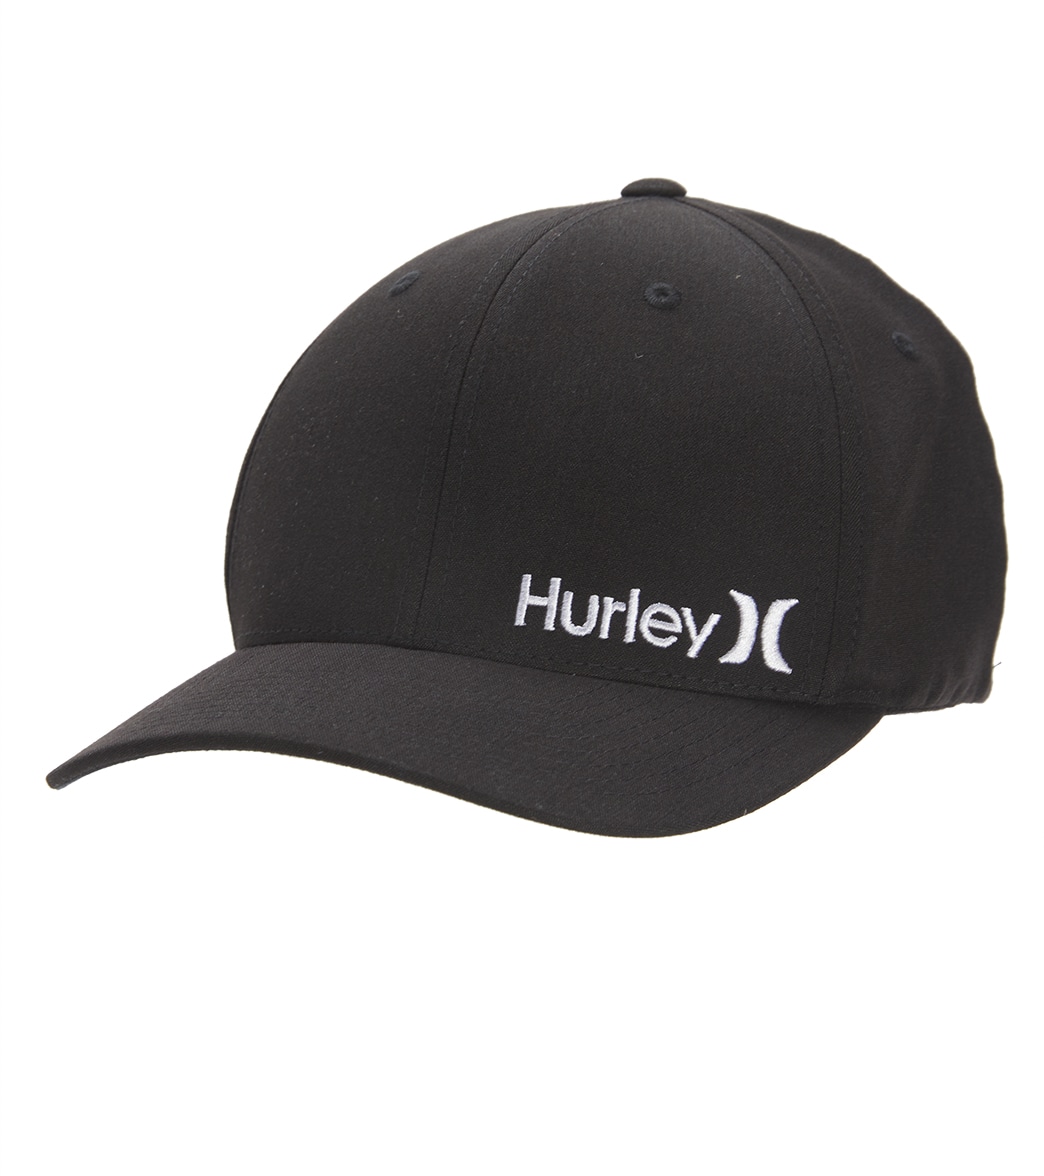 Hurley Men's Corp Textures Hat - Black Large/Xl - Swimoutlet.com